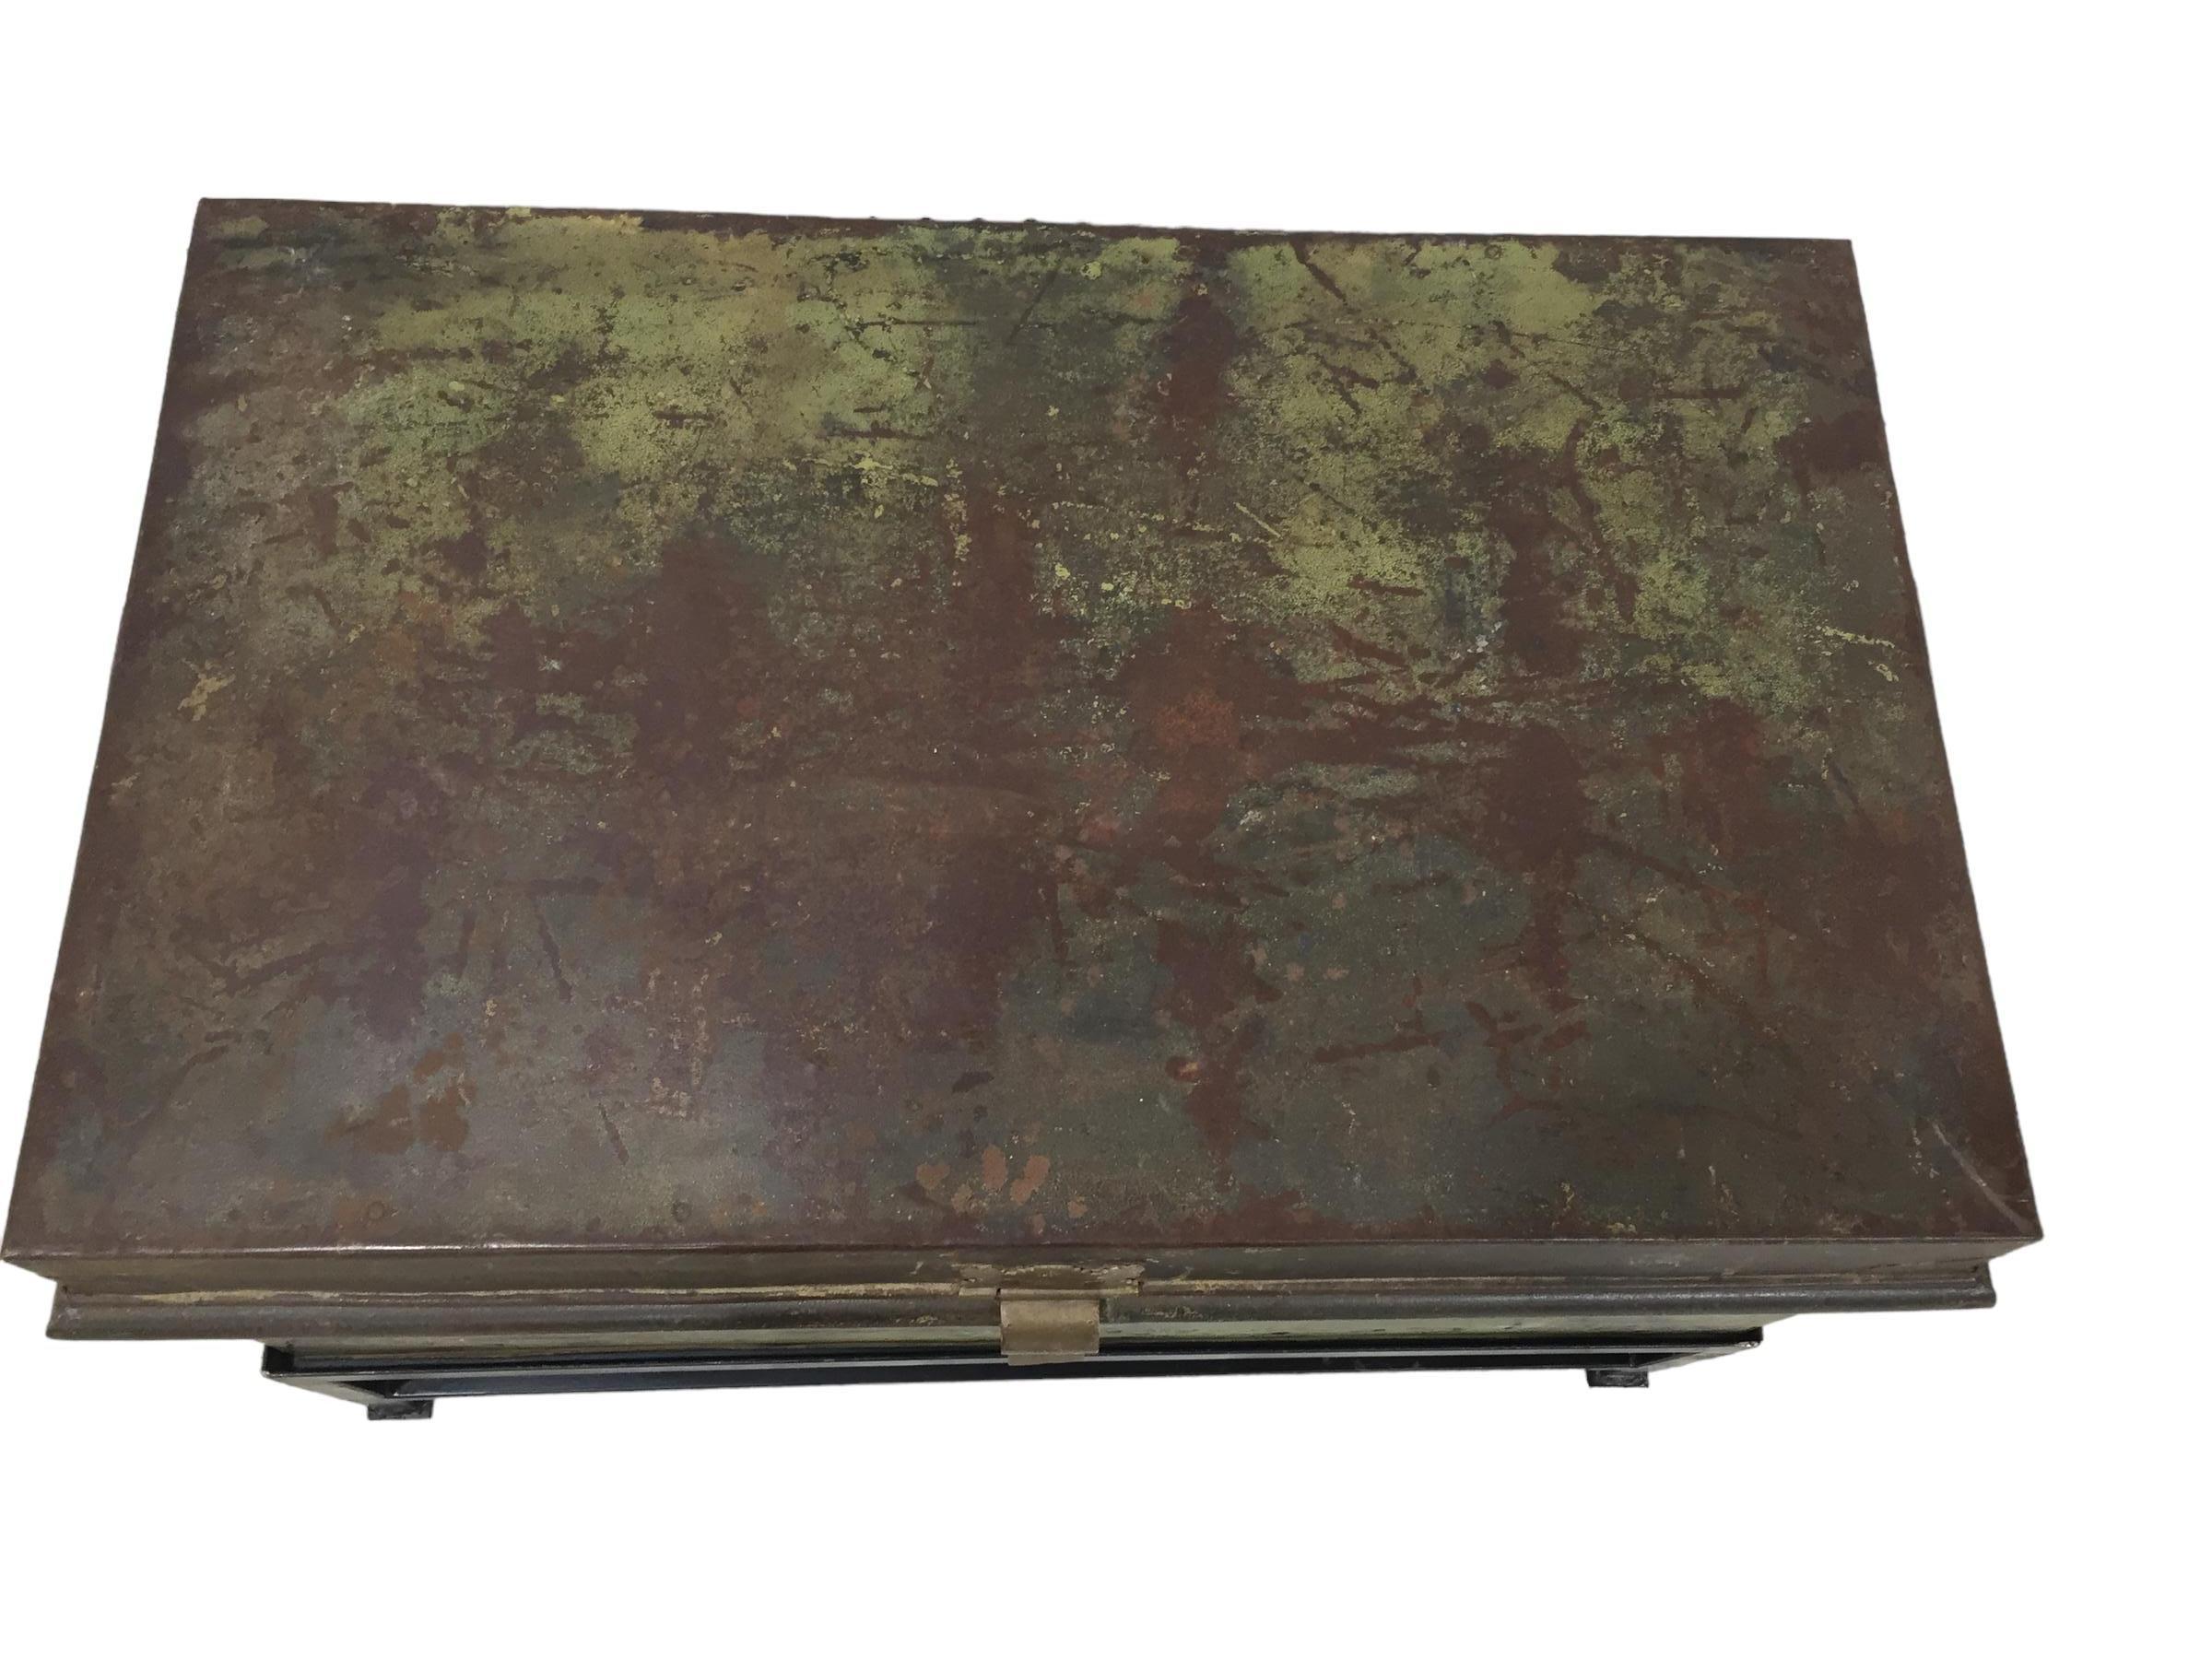 Ancienne malle militaire anglaise en métal avec un loquet en laiton sur une base en fer. La malle présente des traces d'utilisation quotidienne et une perte de peinture, ce qui ajoute à l'authenticité générale de la malle.
